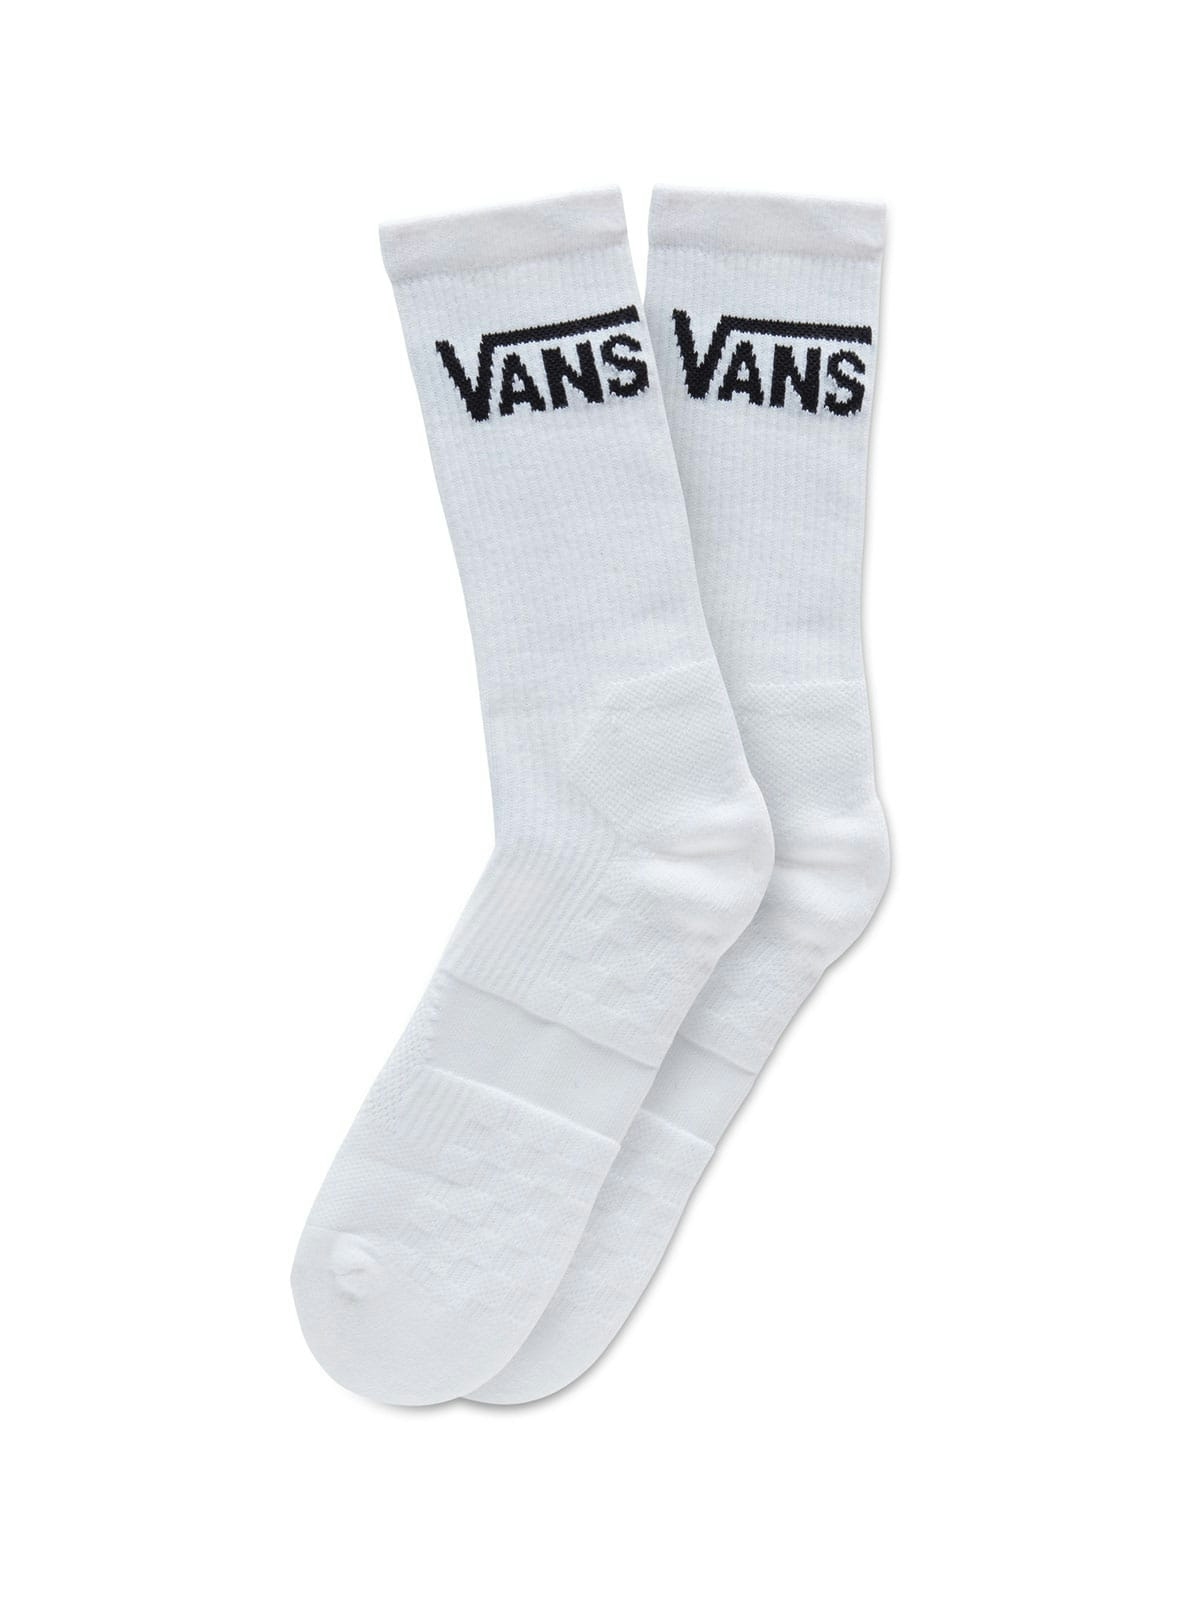 Vans Vans Skate Crew Socks White 1